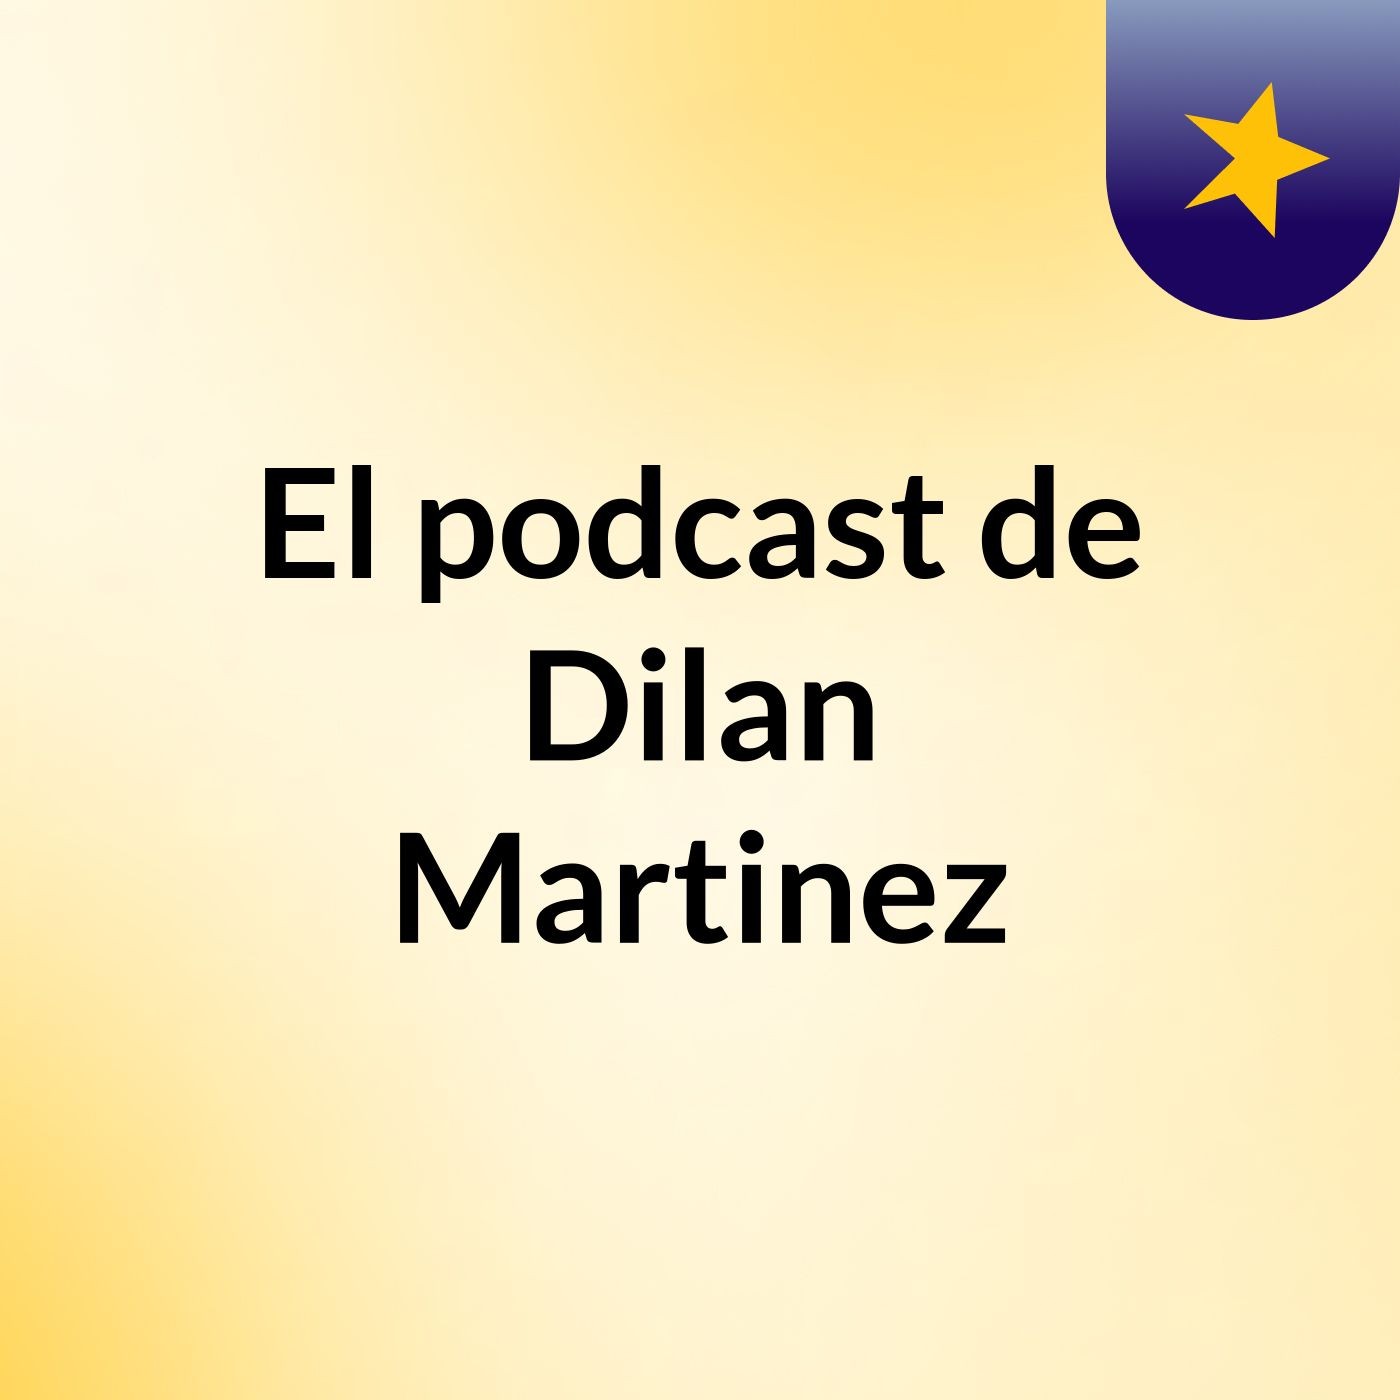 Episodio 2 - El podcast de Dilan Martinez